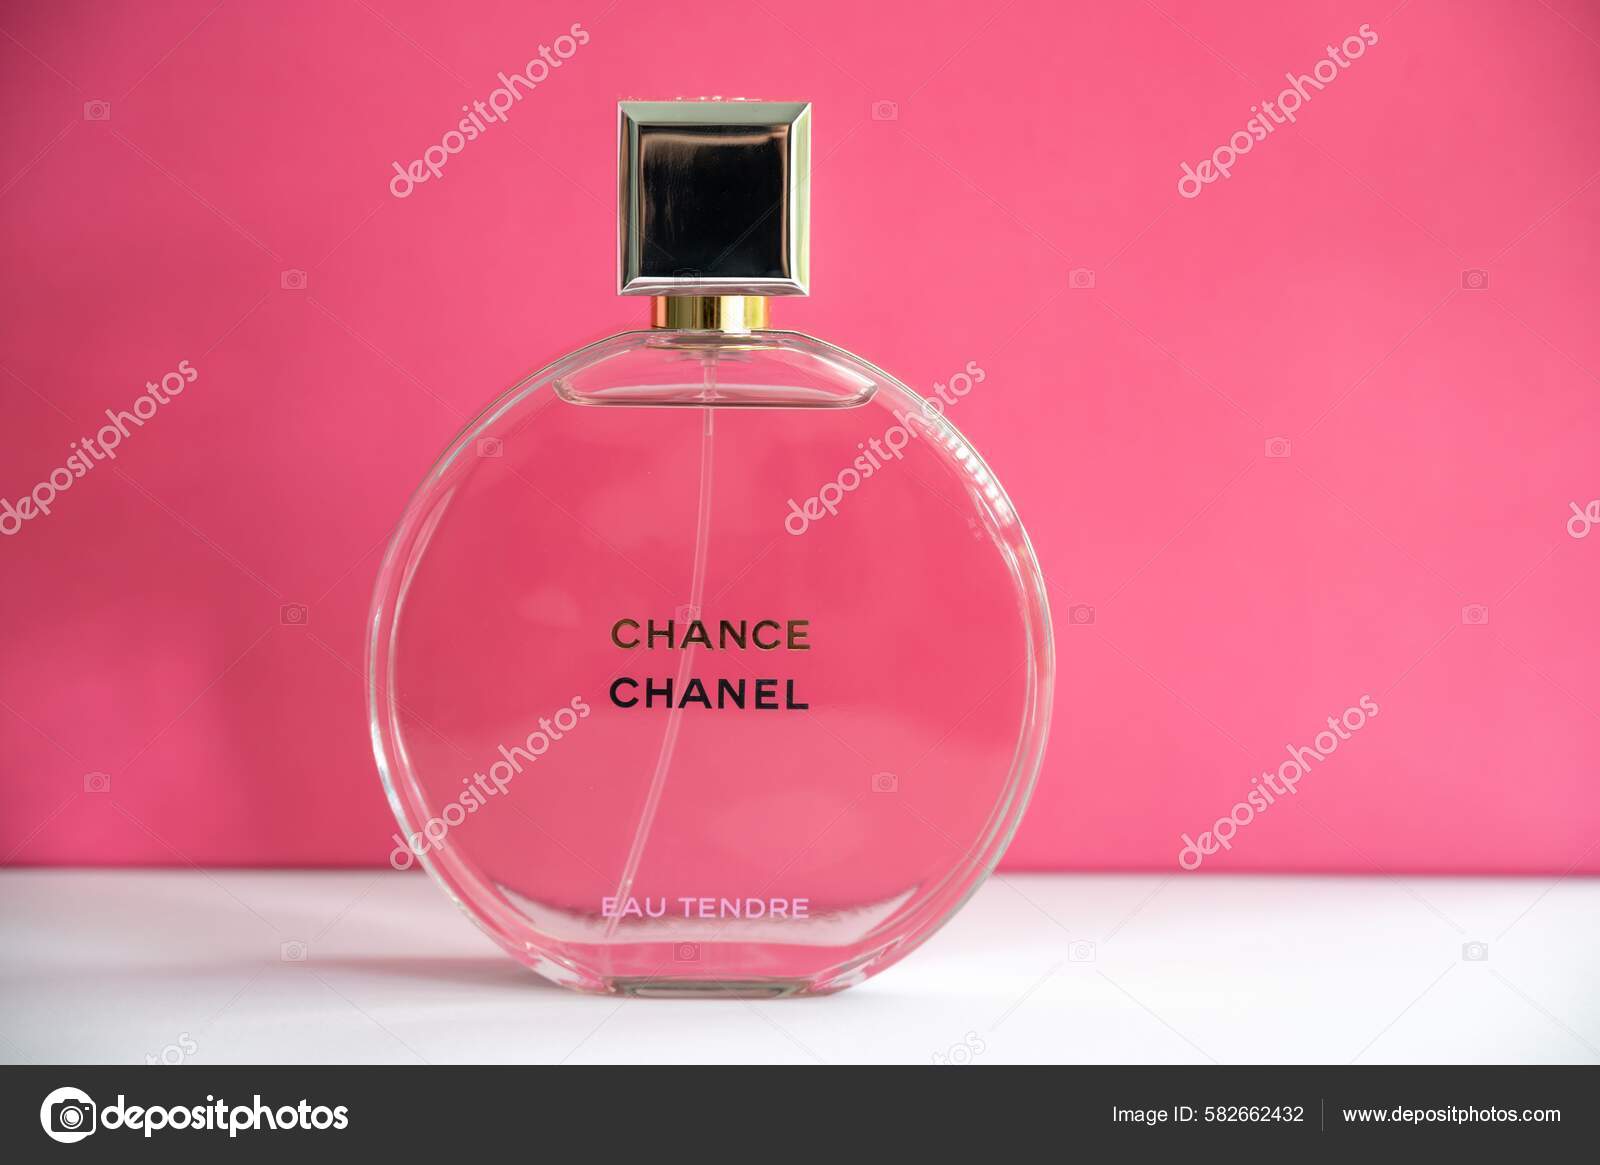 Chanel Gardénia Gardenia 15 Ml. or 0.25 Oz. Flacon Parfum 